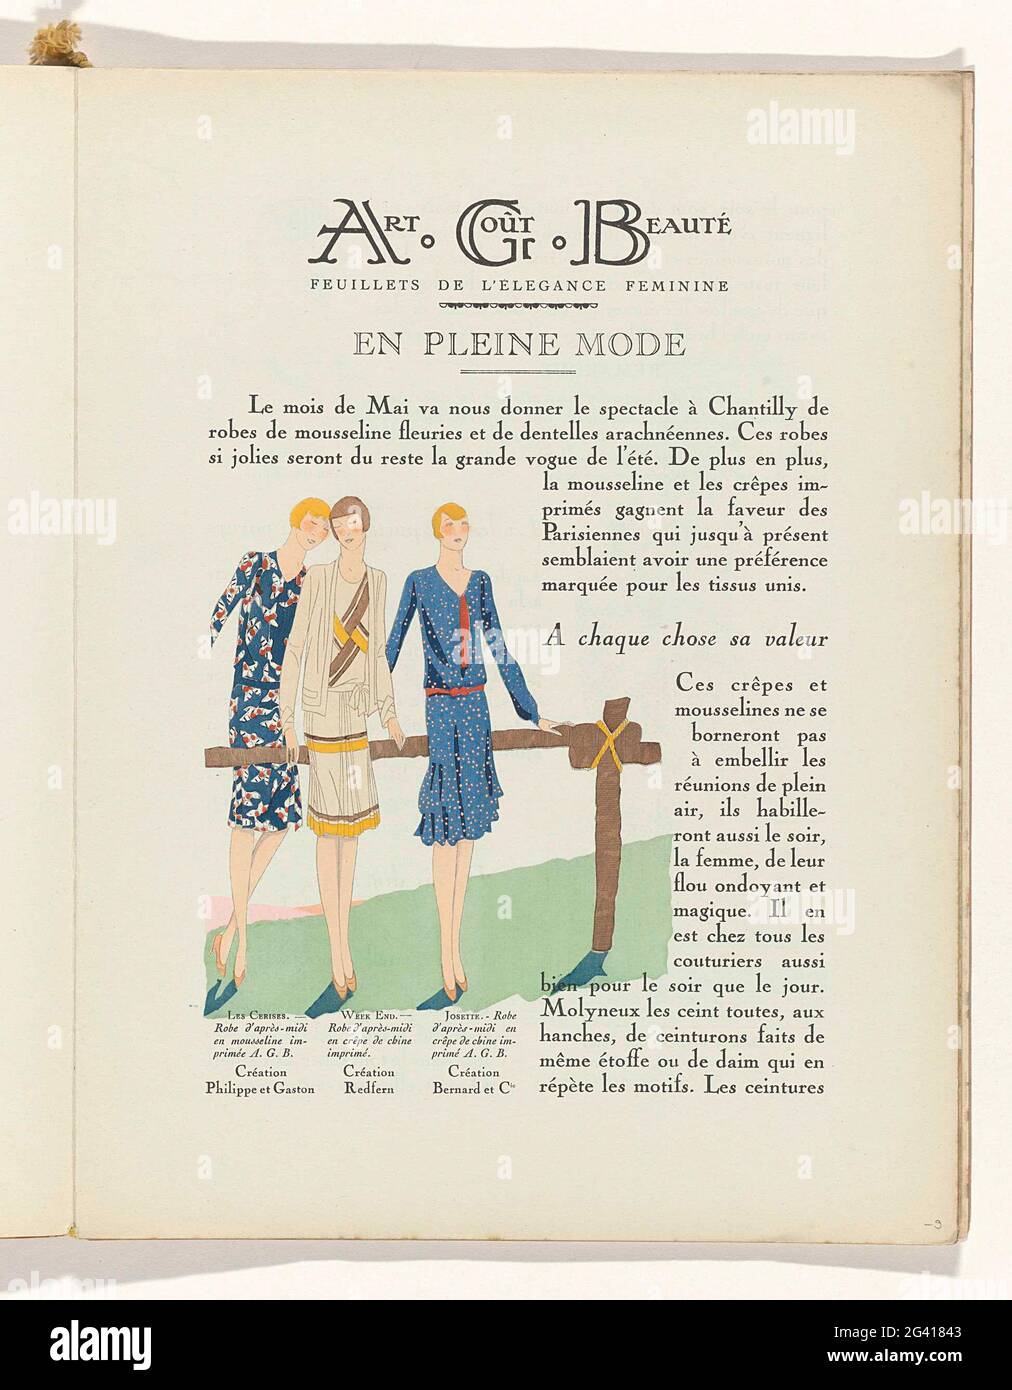 Art - Goût - Beauté, Feuillets de l 'Élégance Féminine, MAI 1929, no. 105,  9th Année, p. 9. Text about the spring fashion. Illustration with afternoon  juke of Philippe & Gaston, Redfern